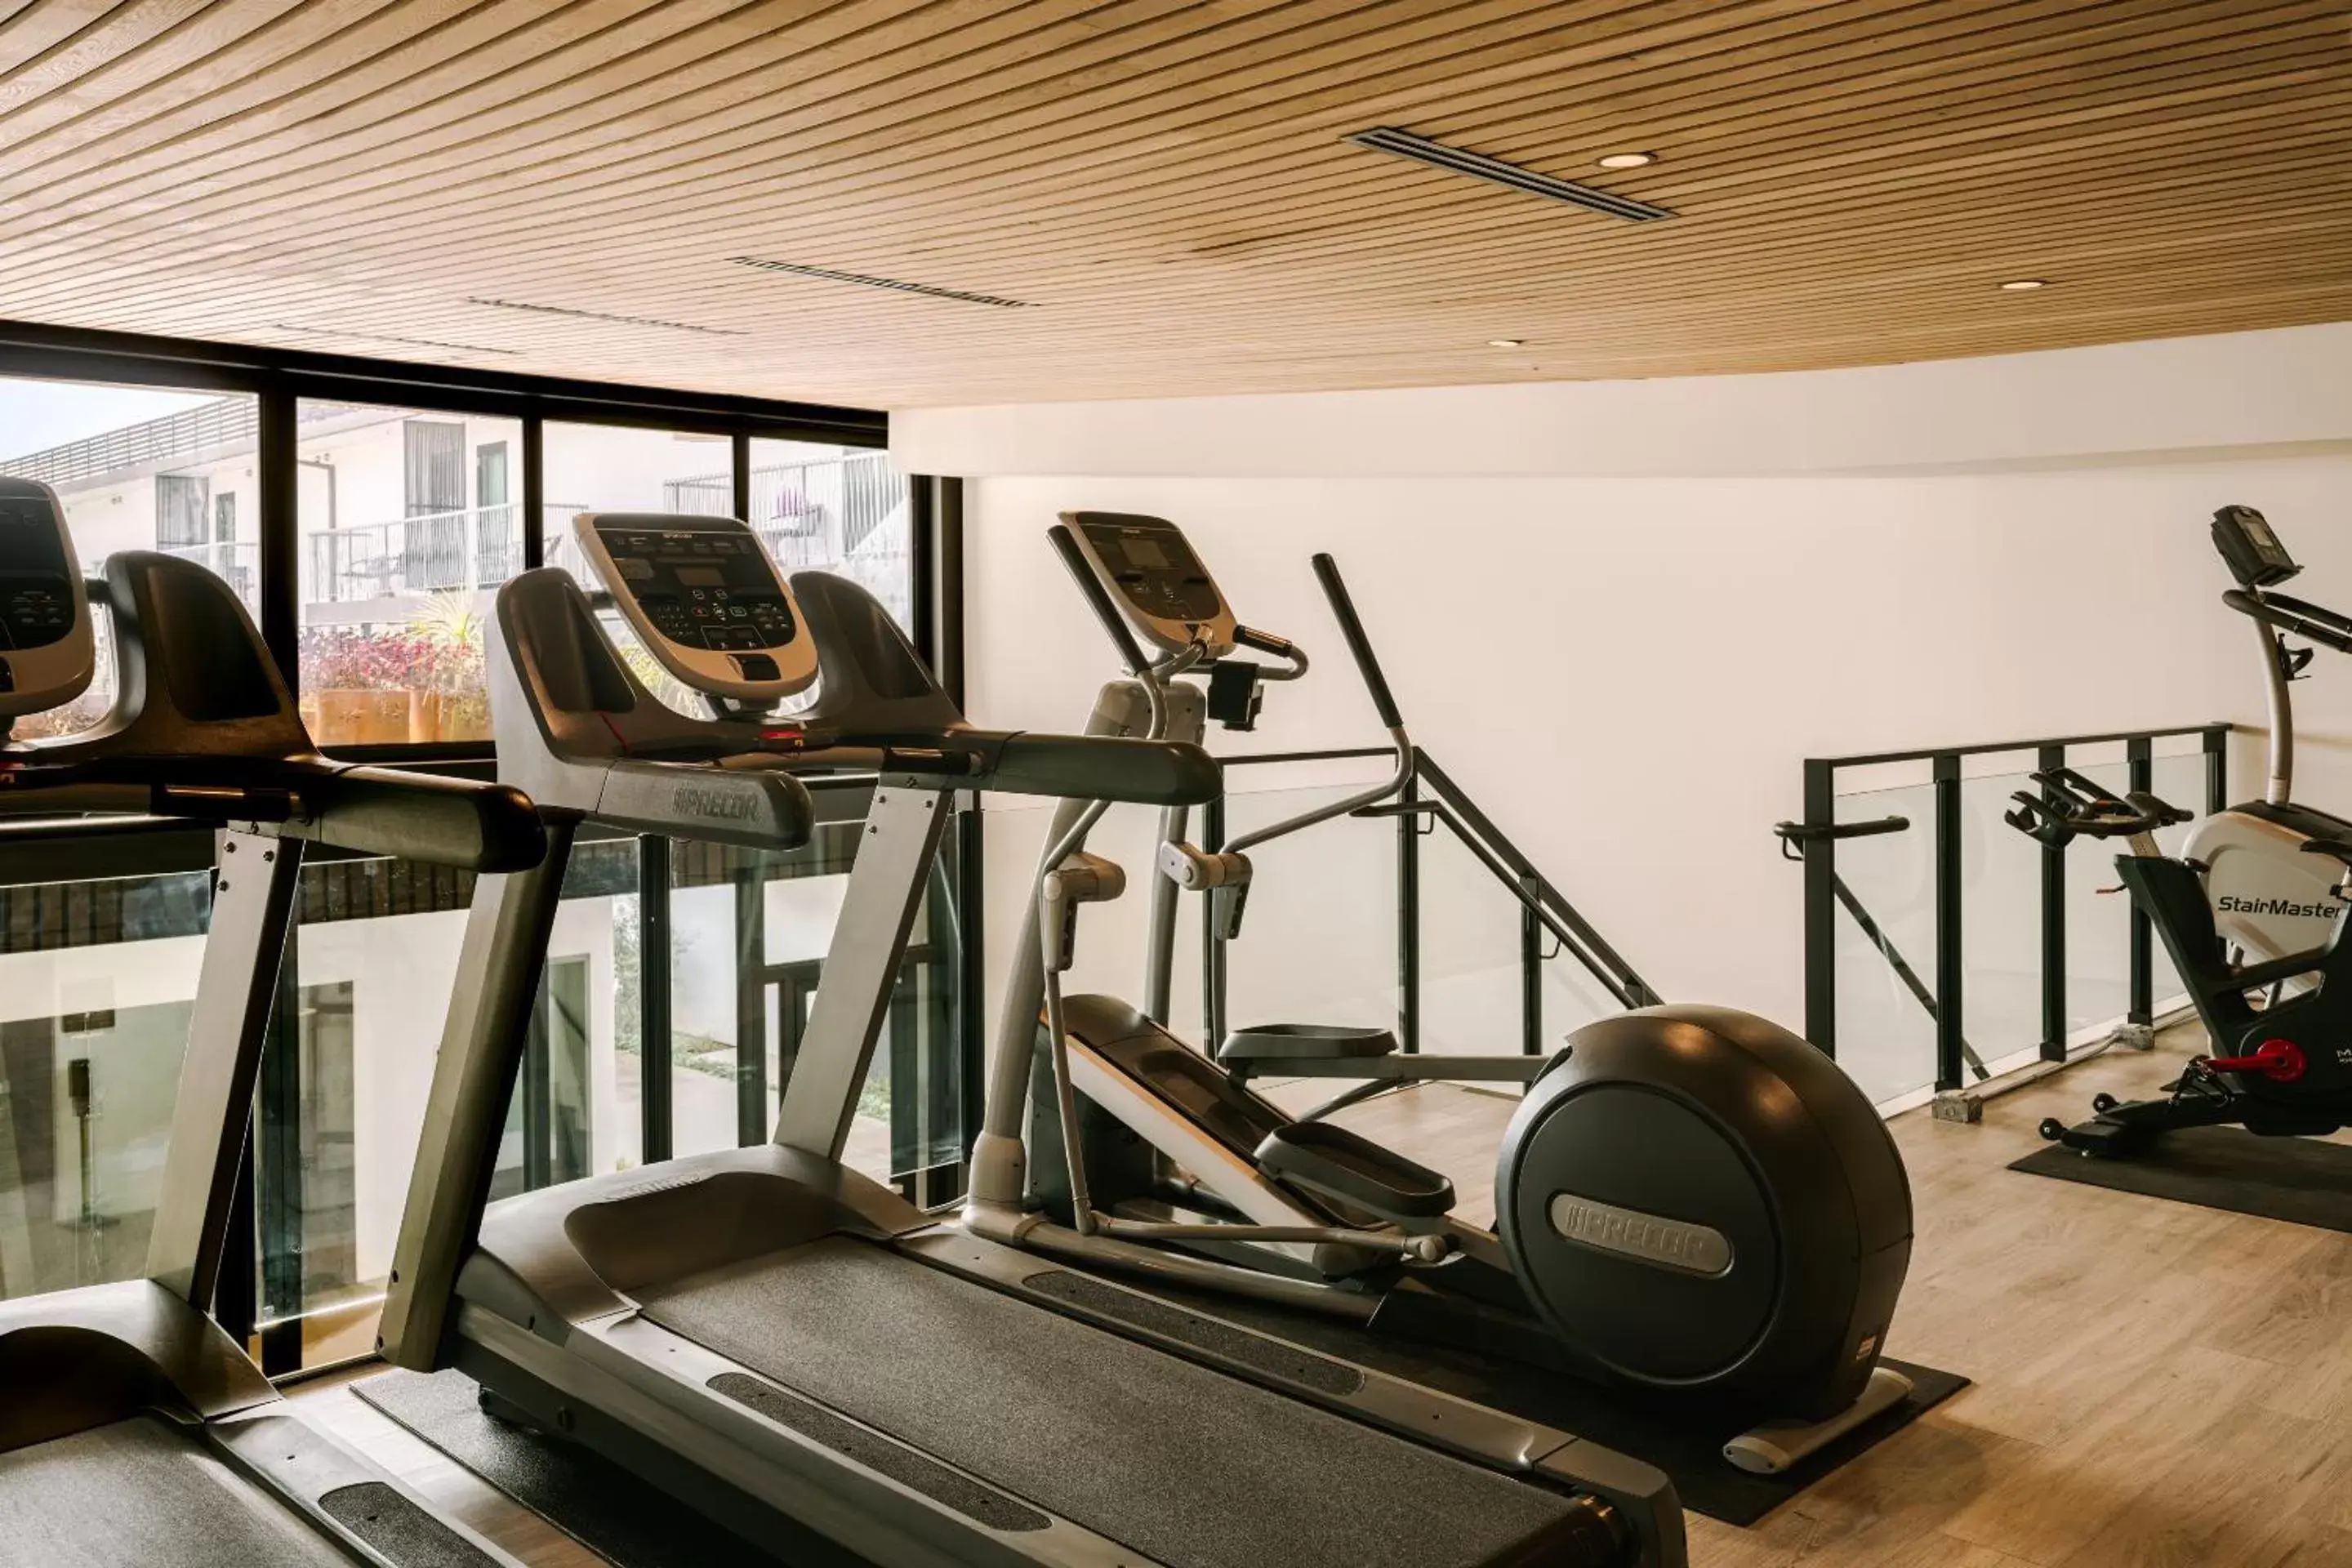 Fitness centre/facilities, Fitness Center/Facilities in Sonder Lüm